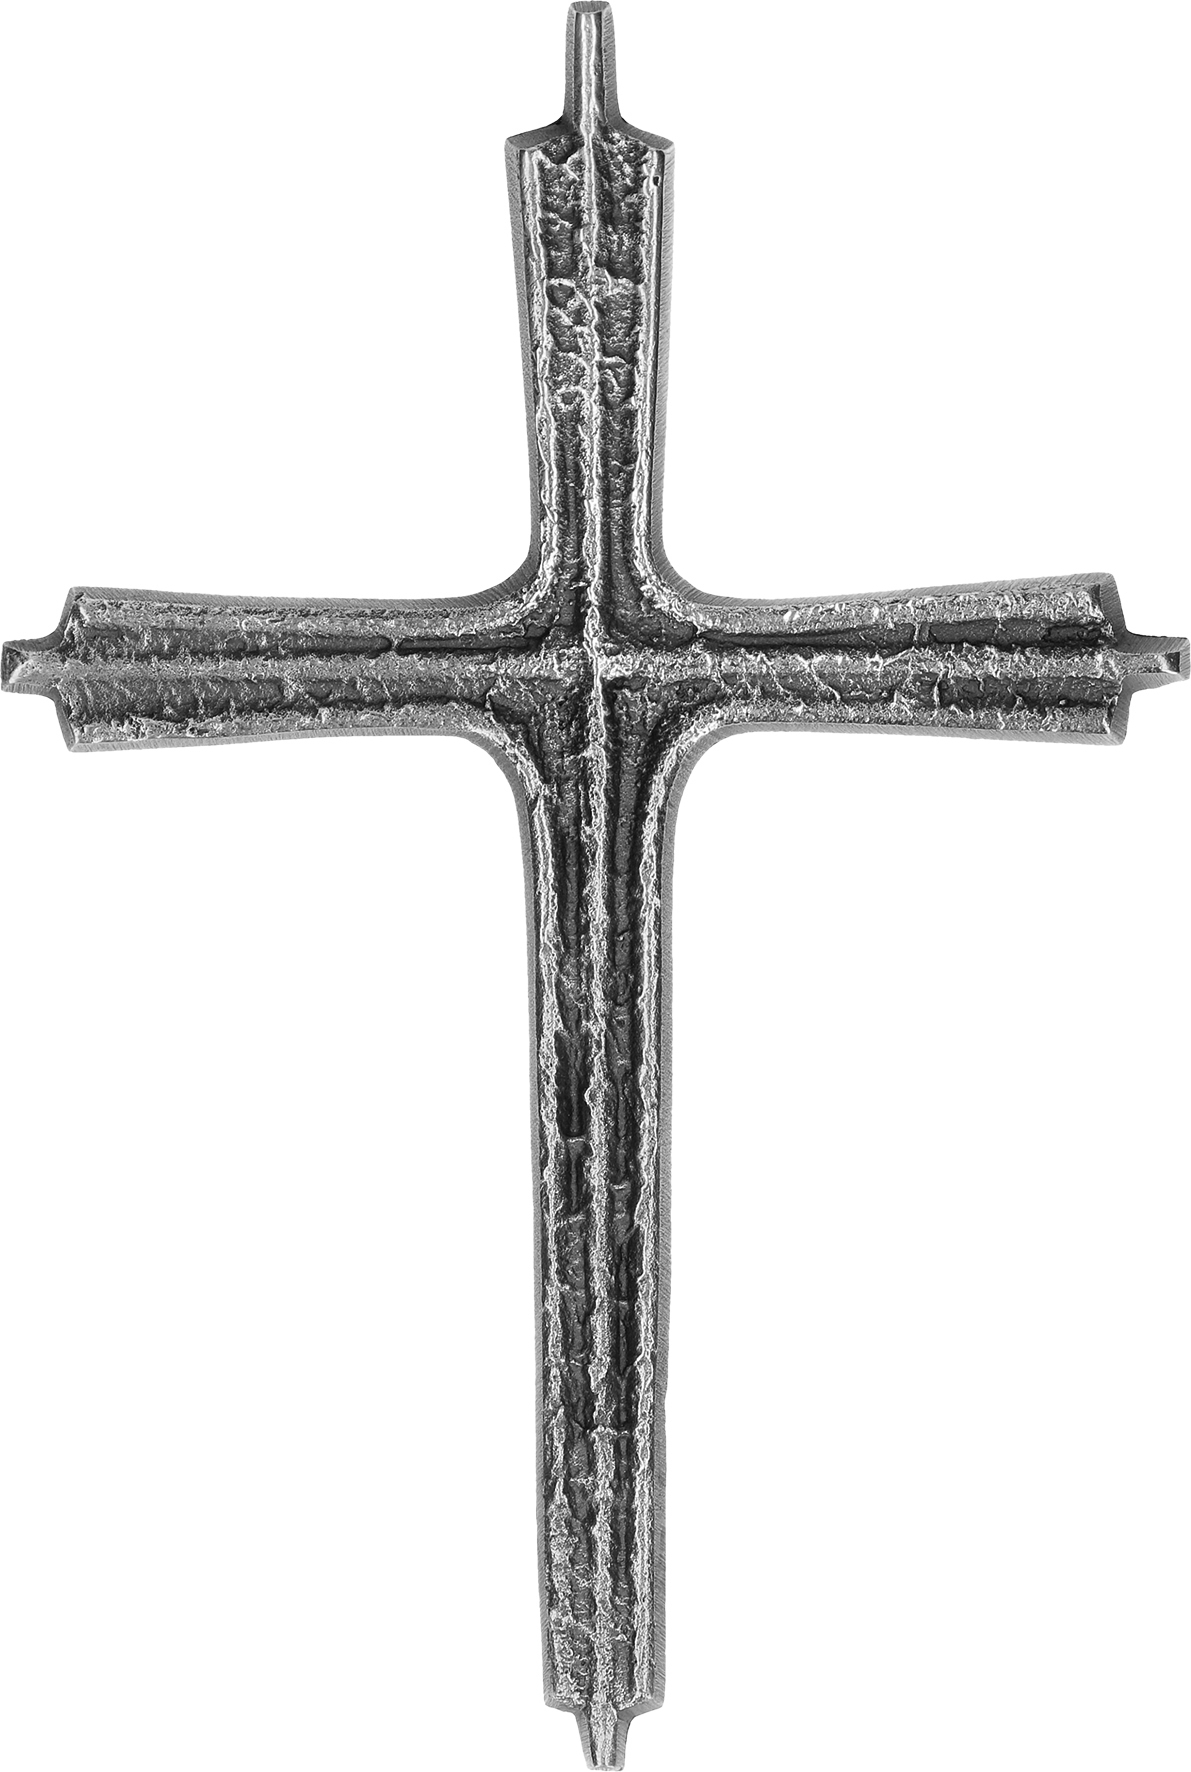 Decorative Cross Nickel Silver